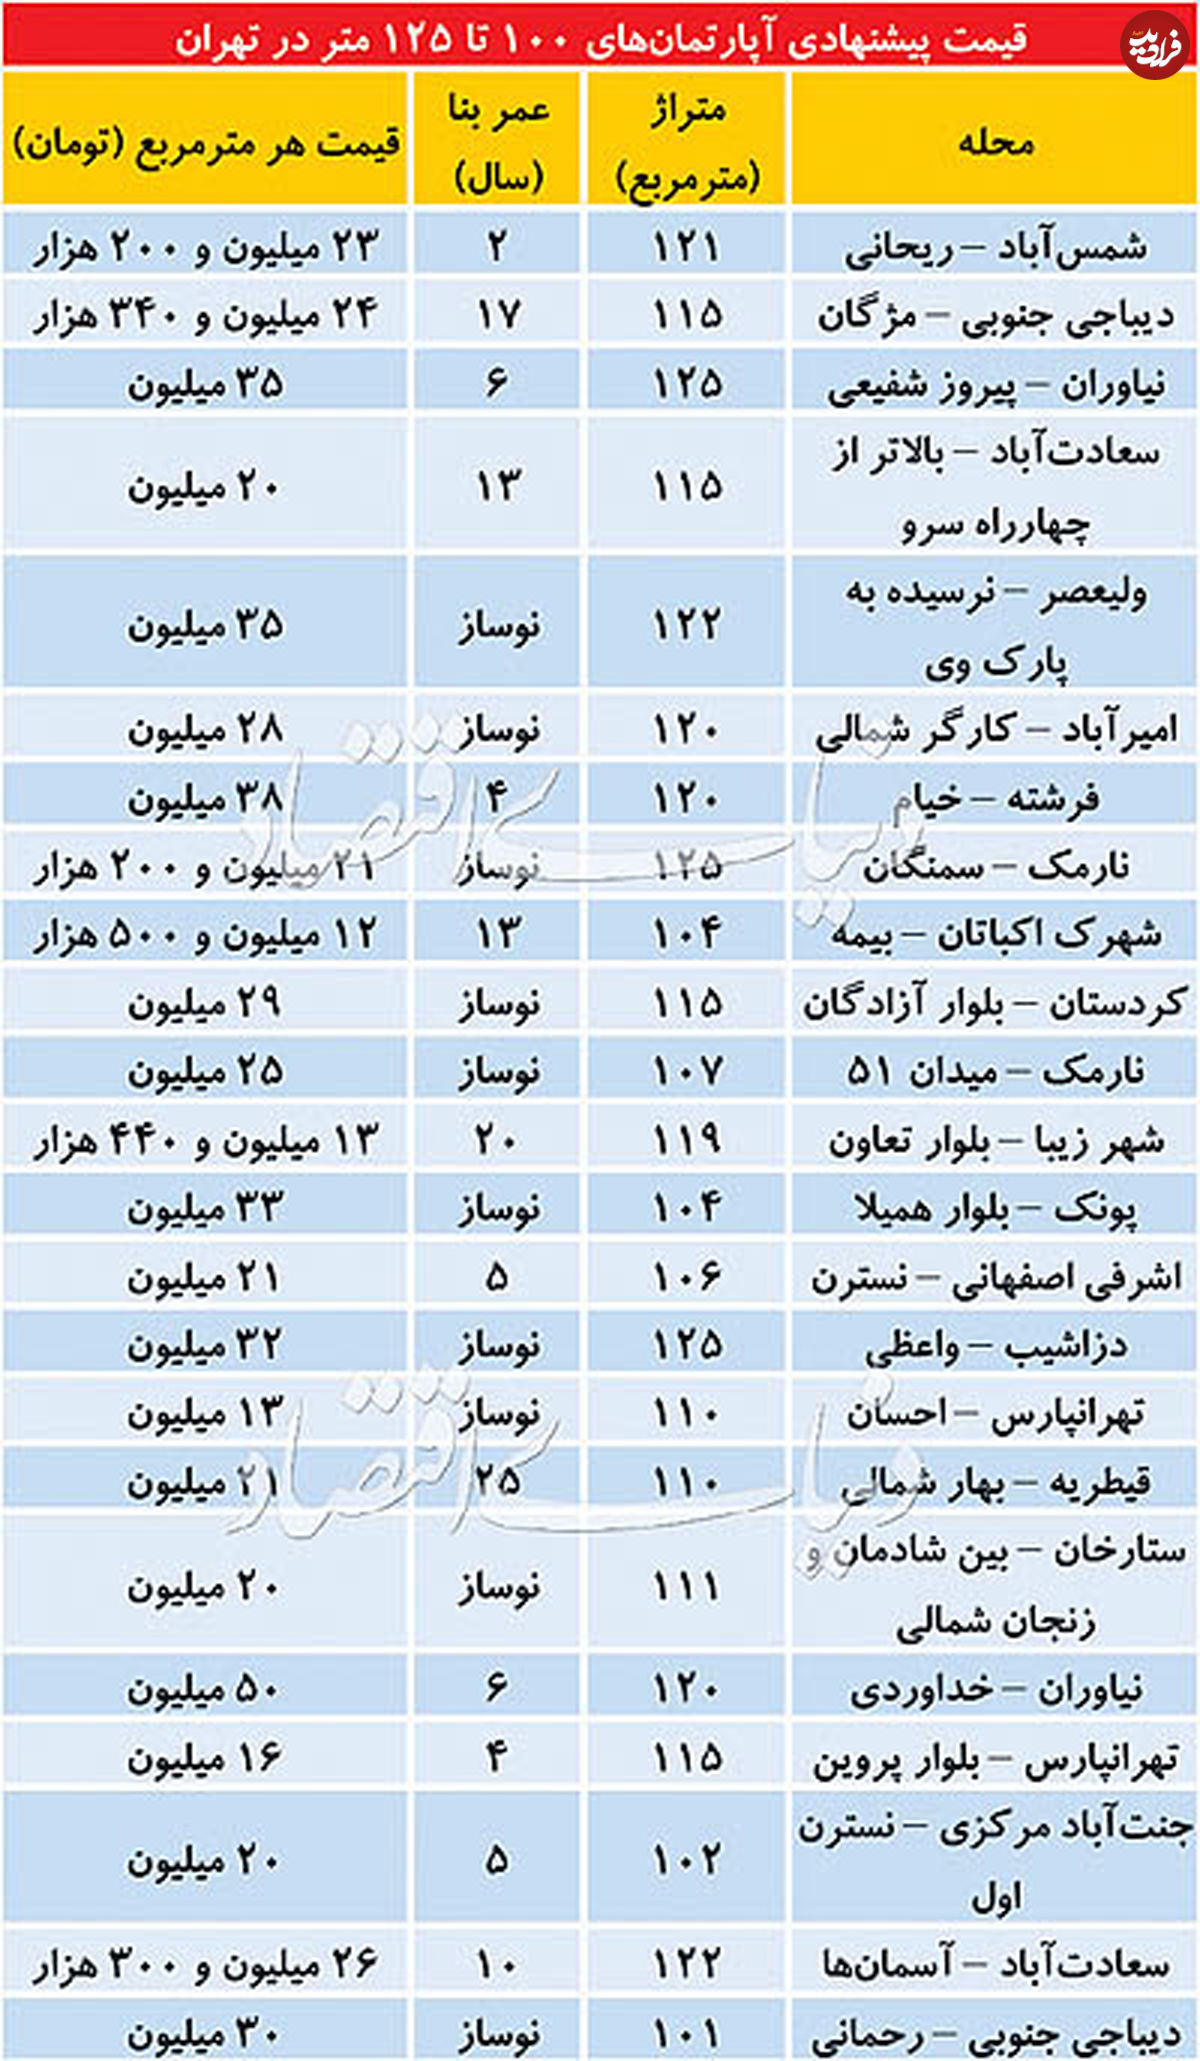 قیمت آپارتمان ۱۰۰ تا ۱۲۵ متری در تهران